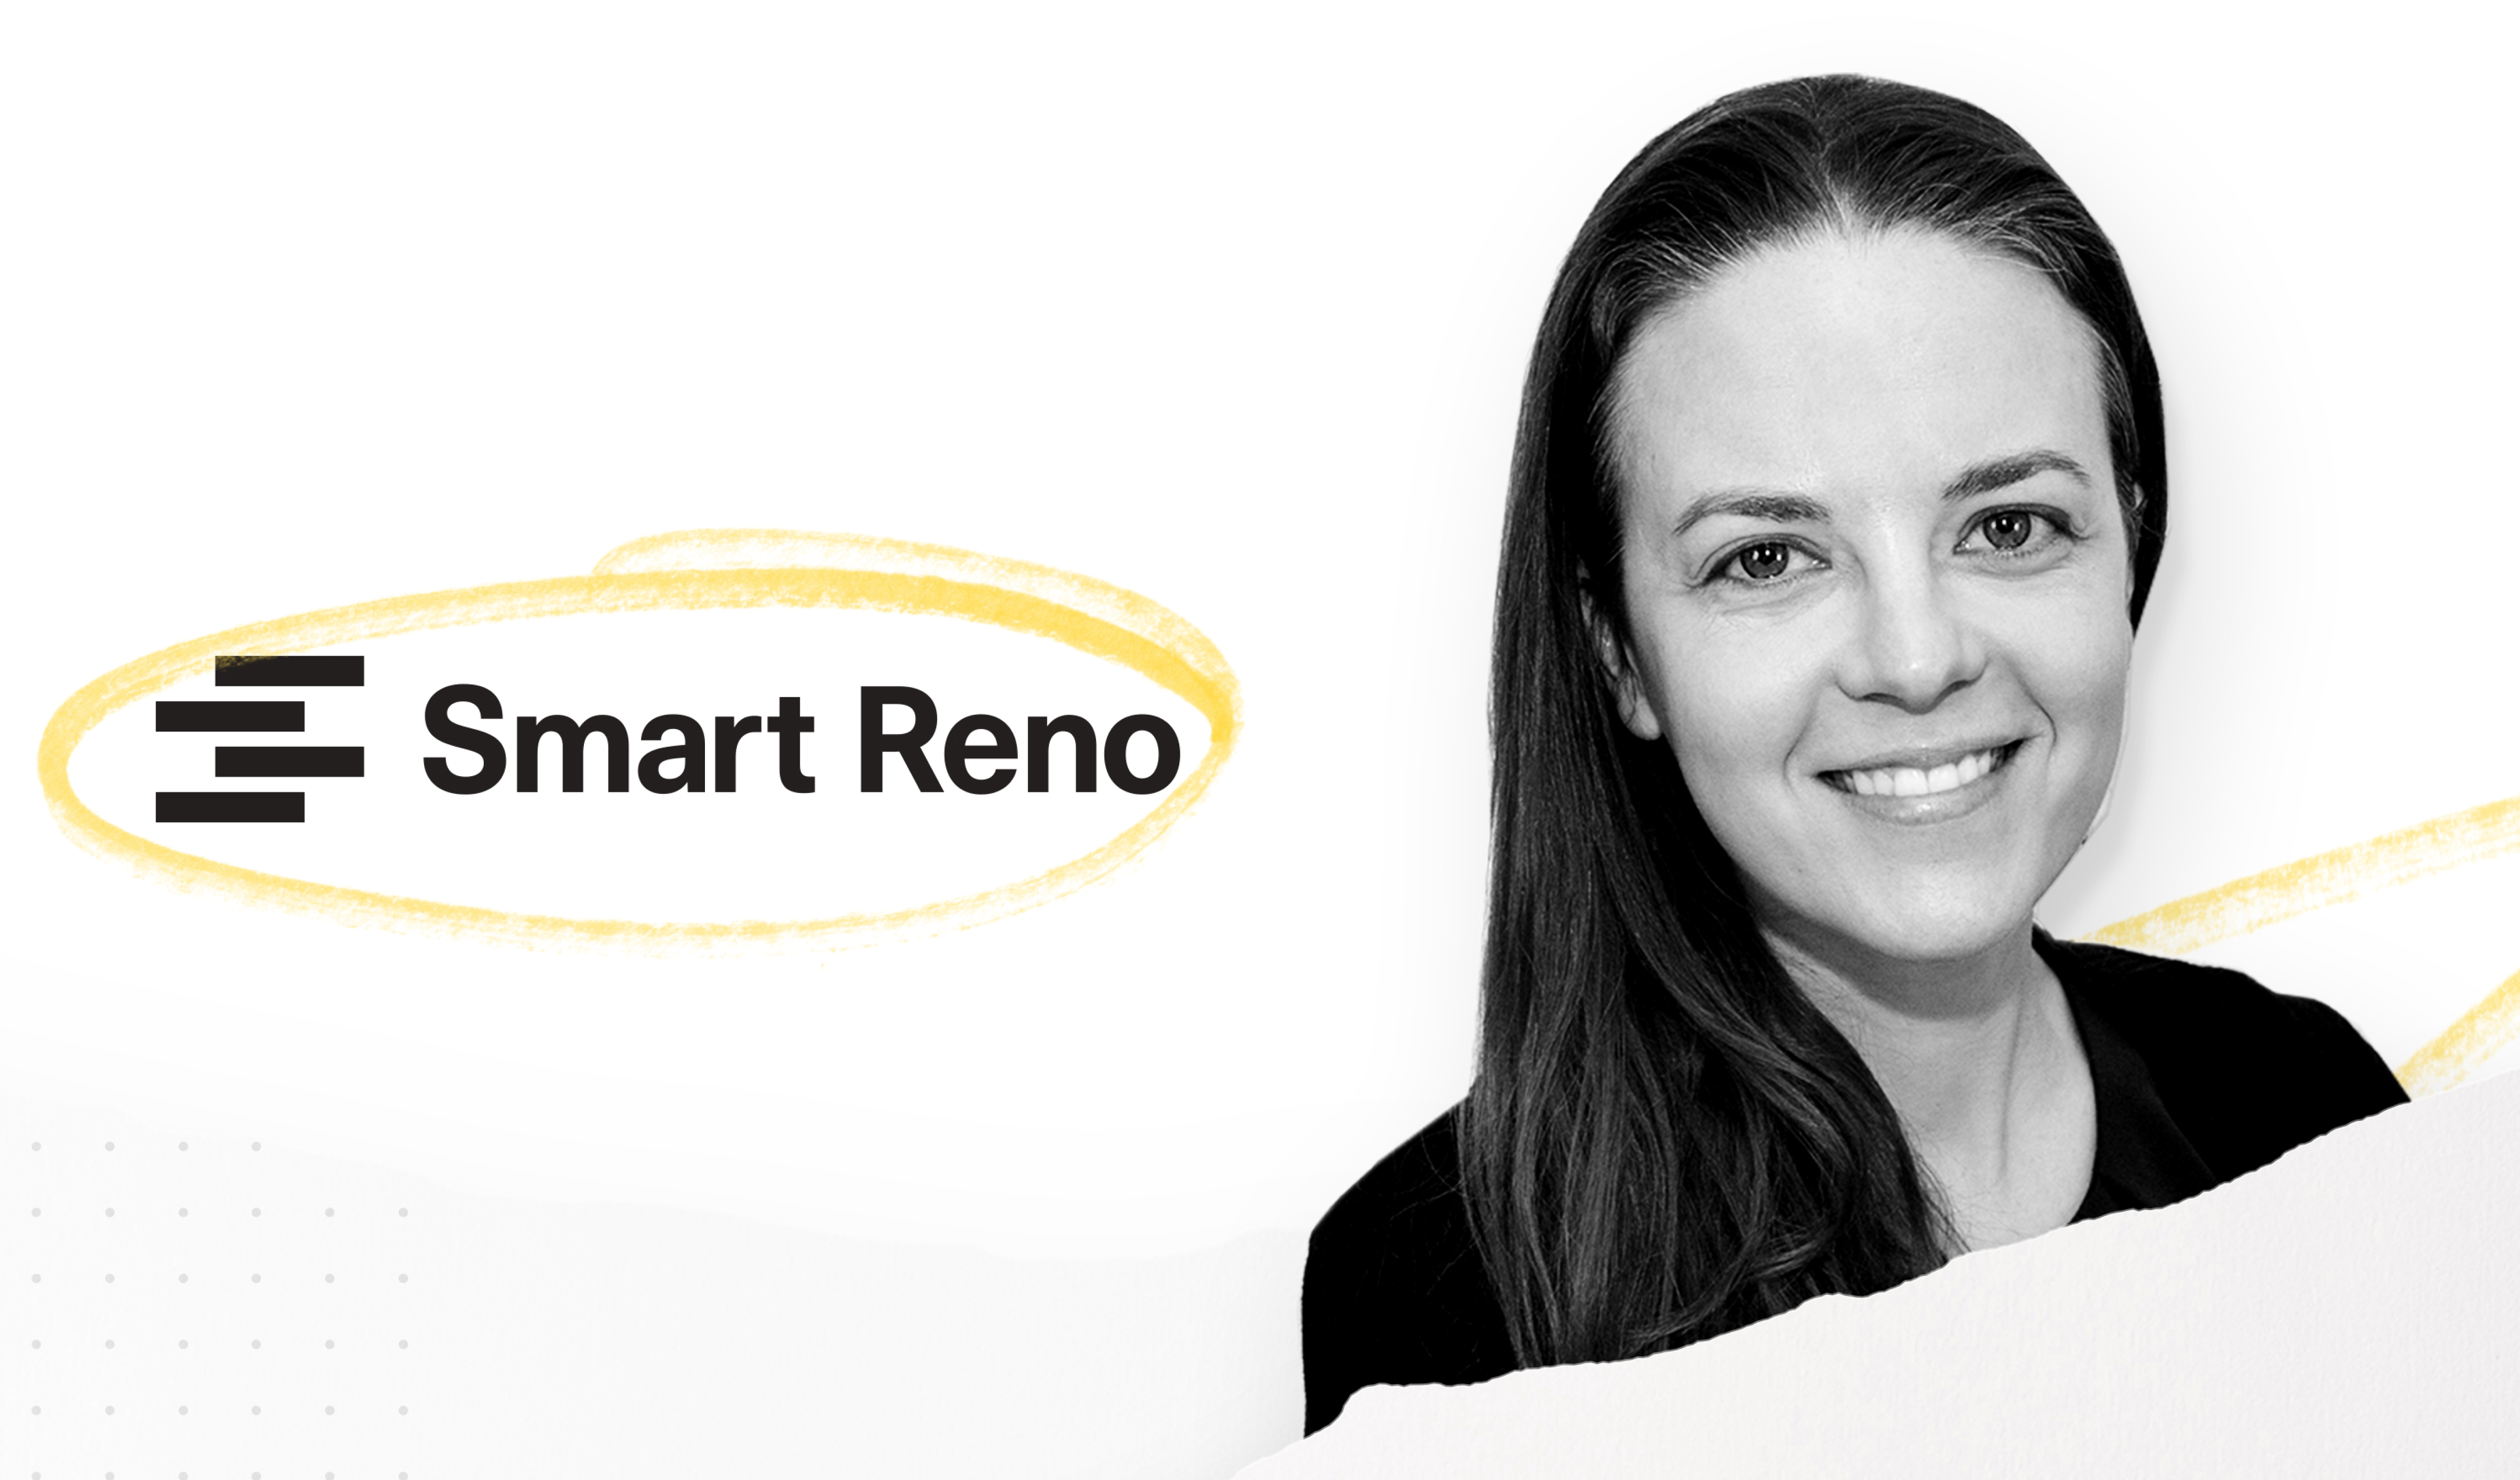 Smart Reno facilite les rénovations domiciliaires